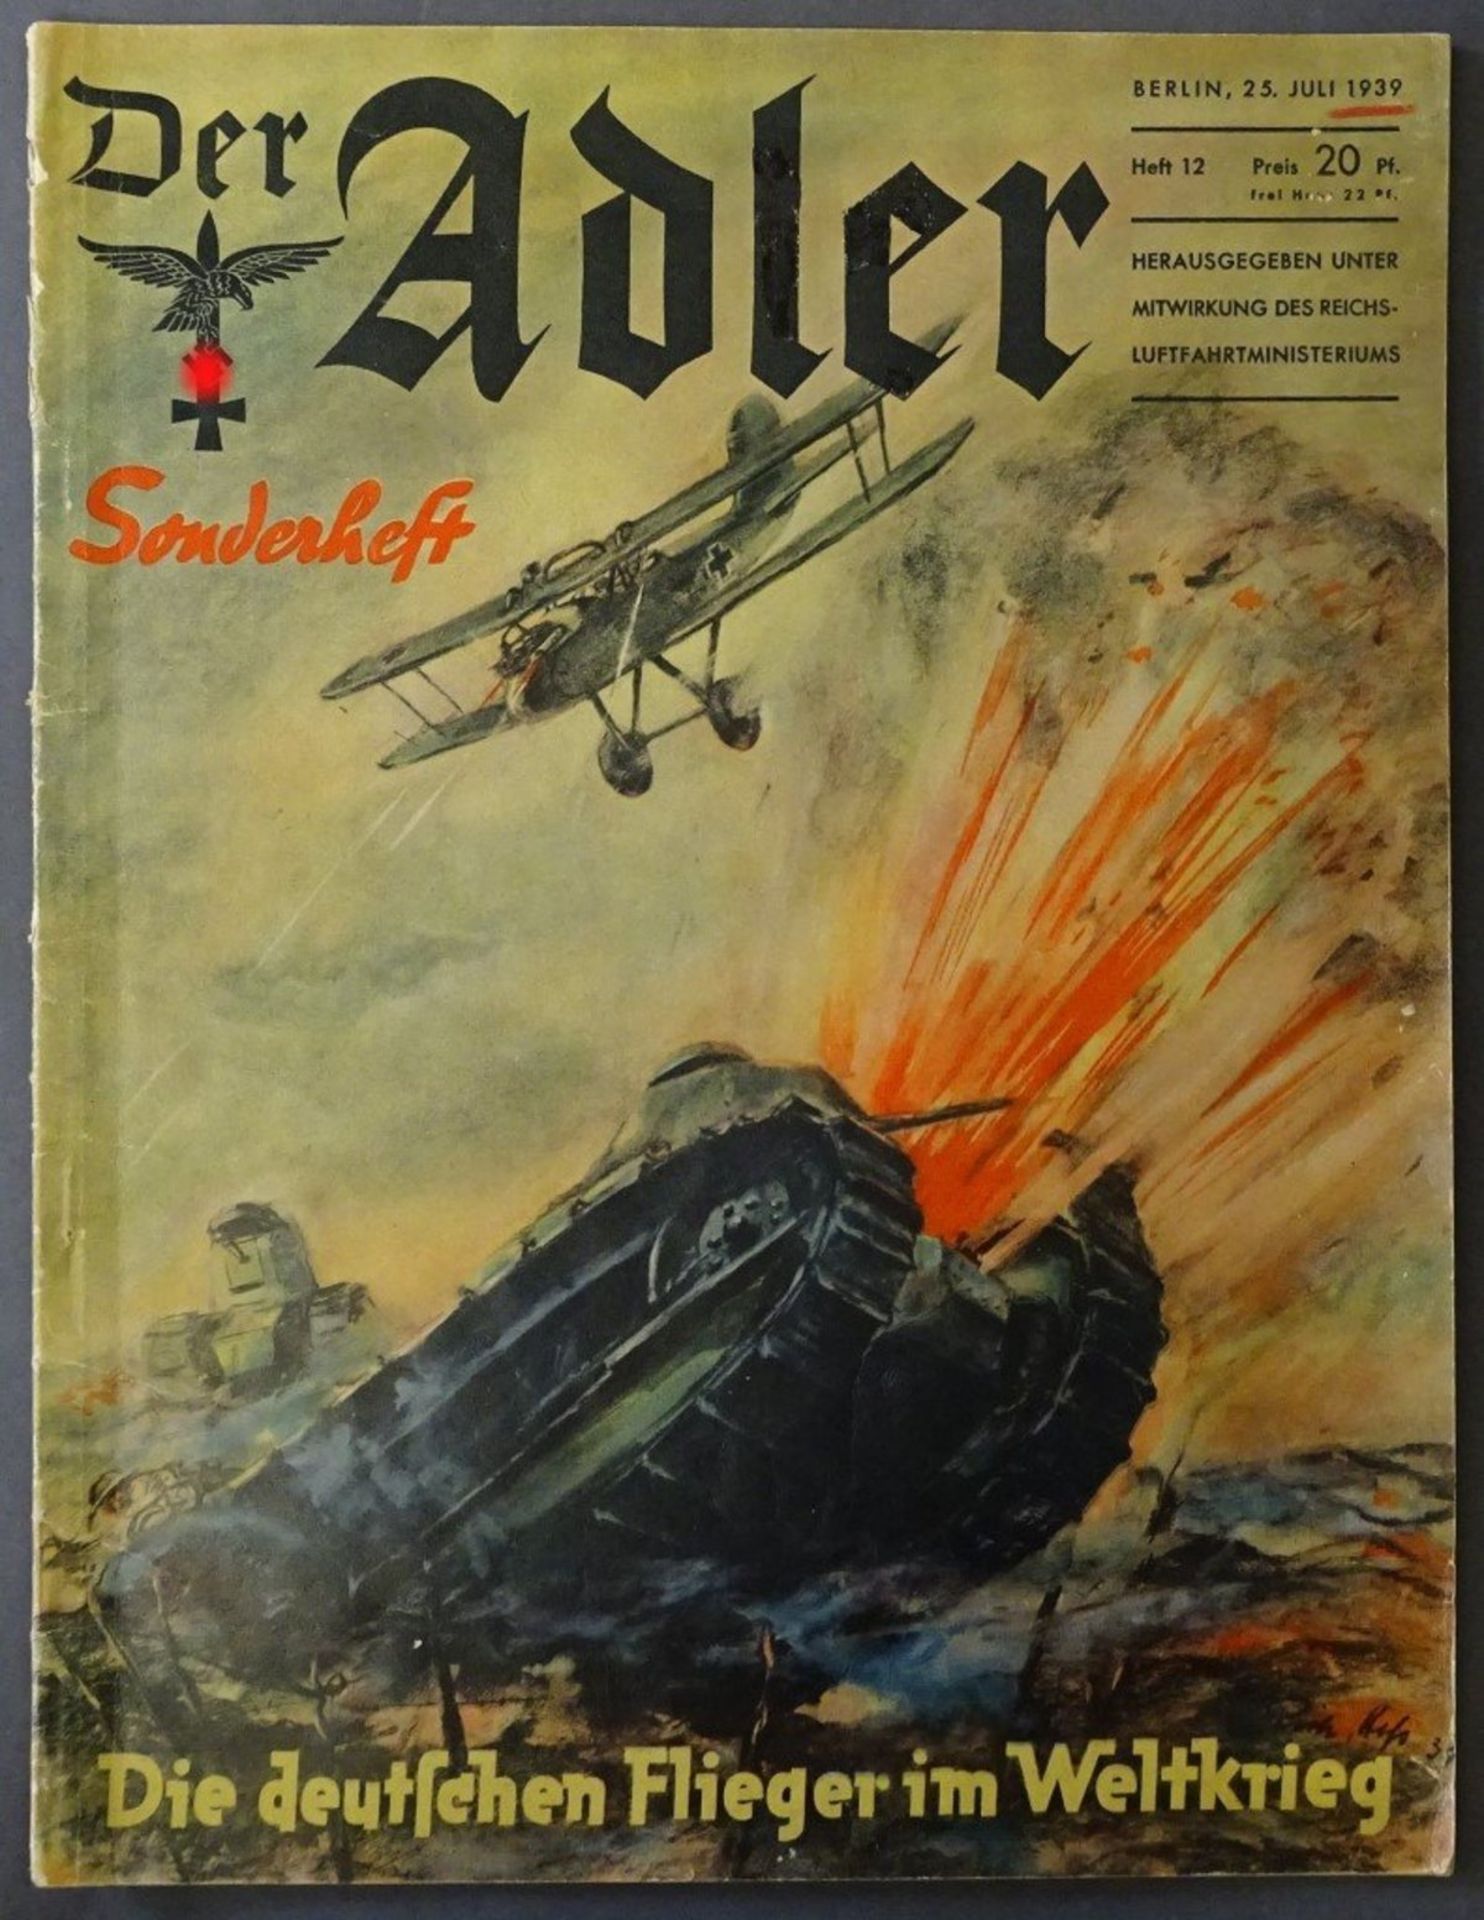 Sonderheft "Der Adler", 1939